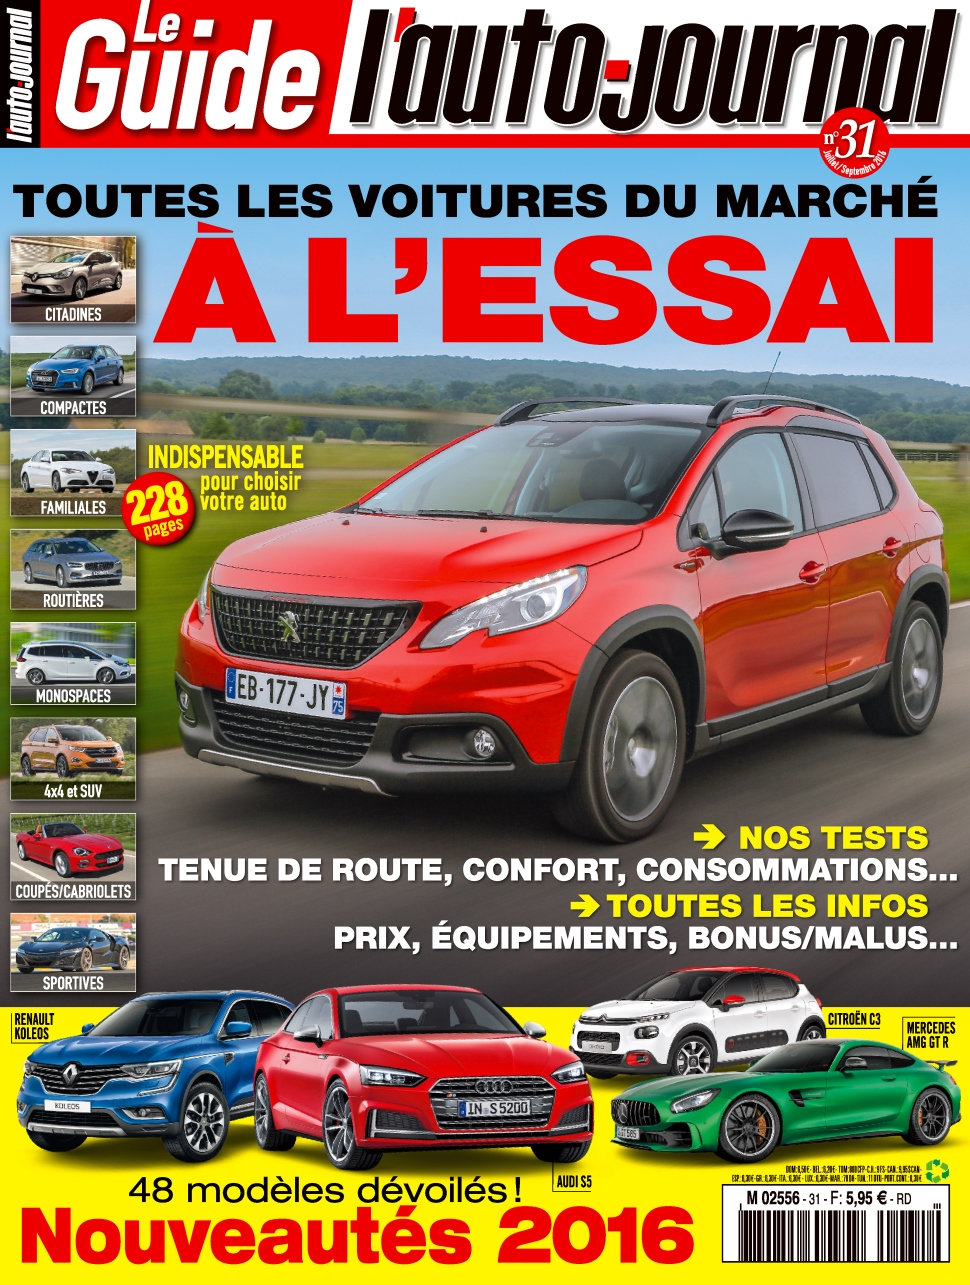 L'Auto-Journal (Le Guide) N°31 - Aout/Septembre 2016 